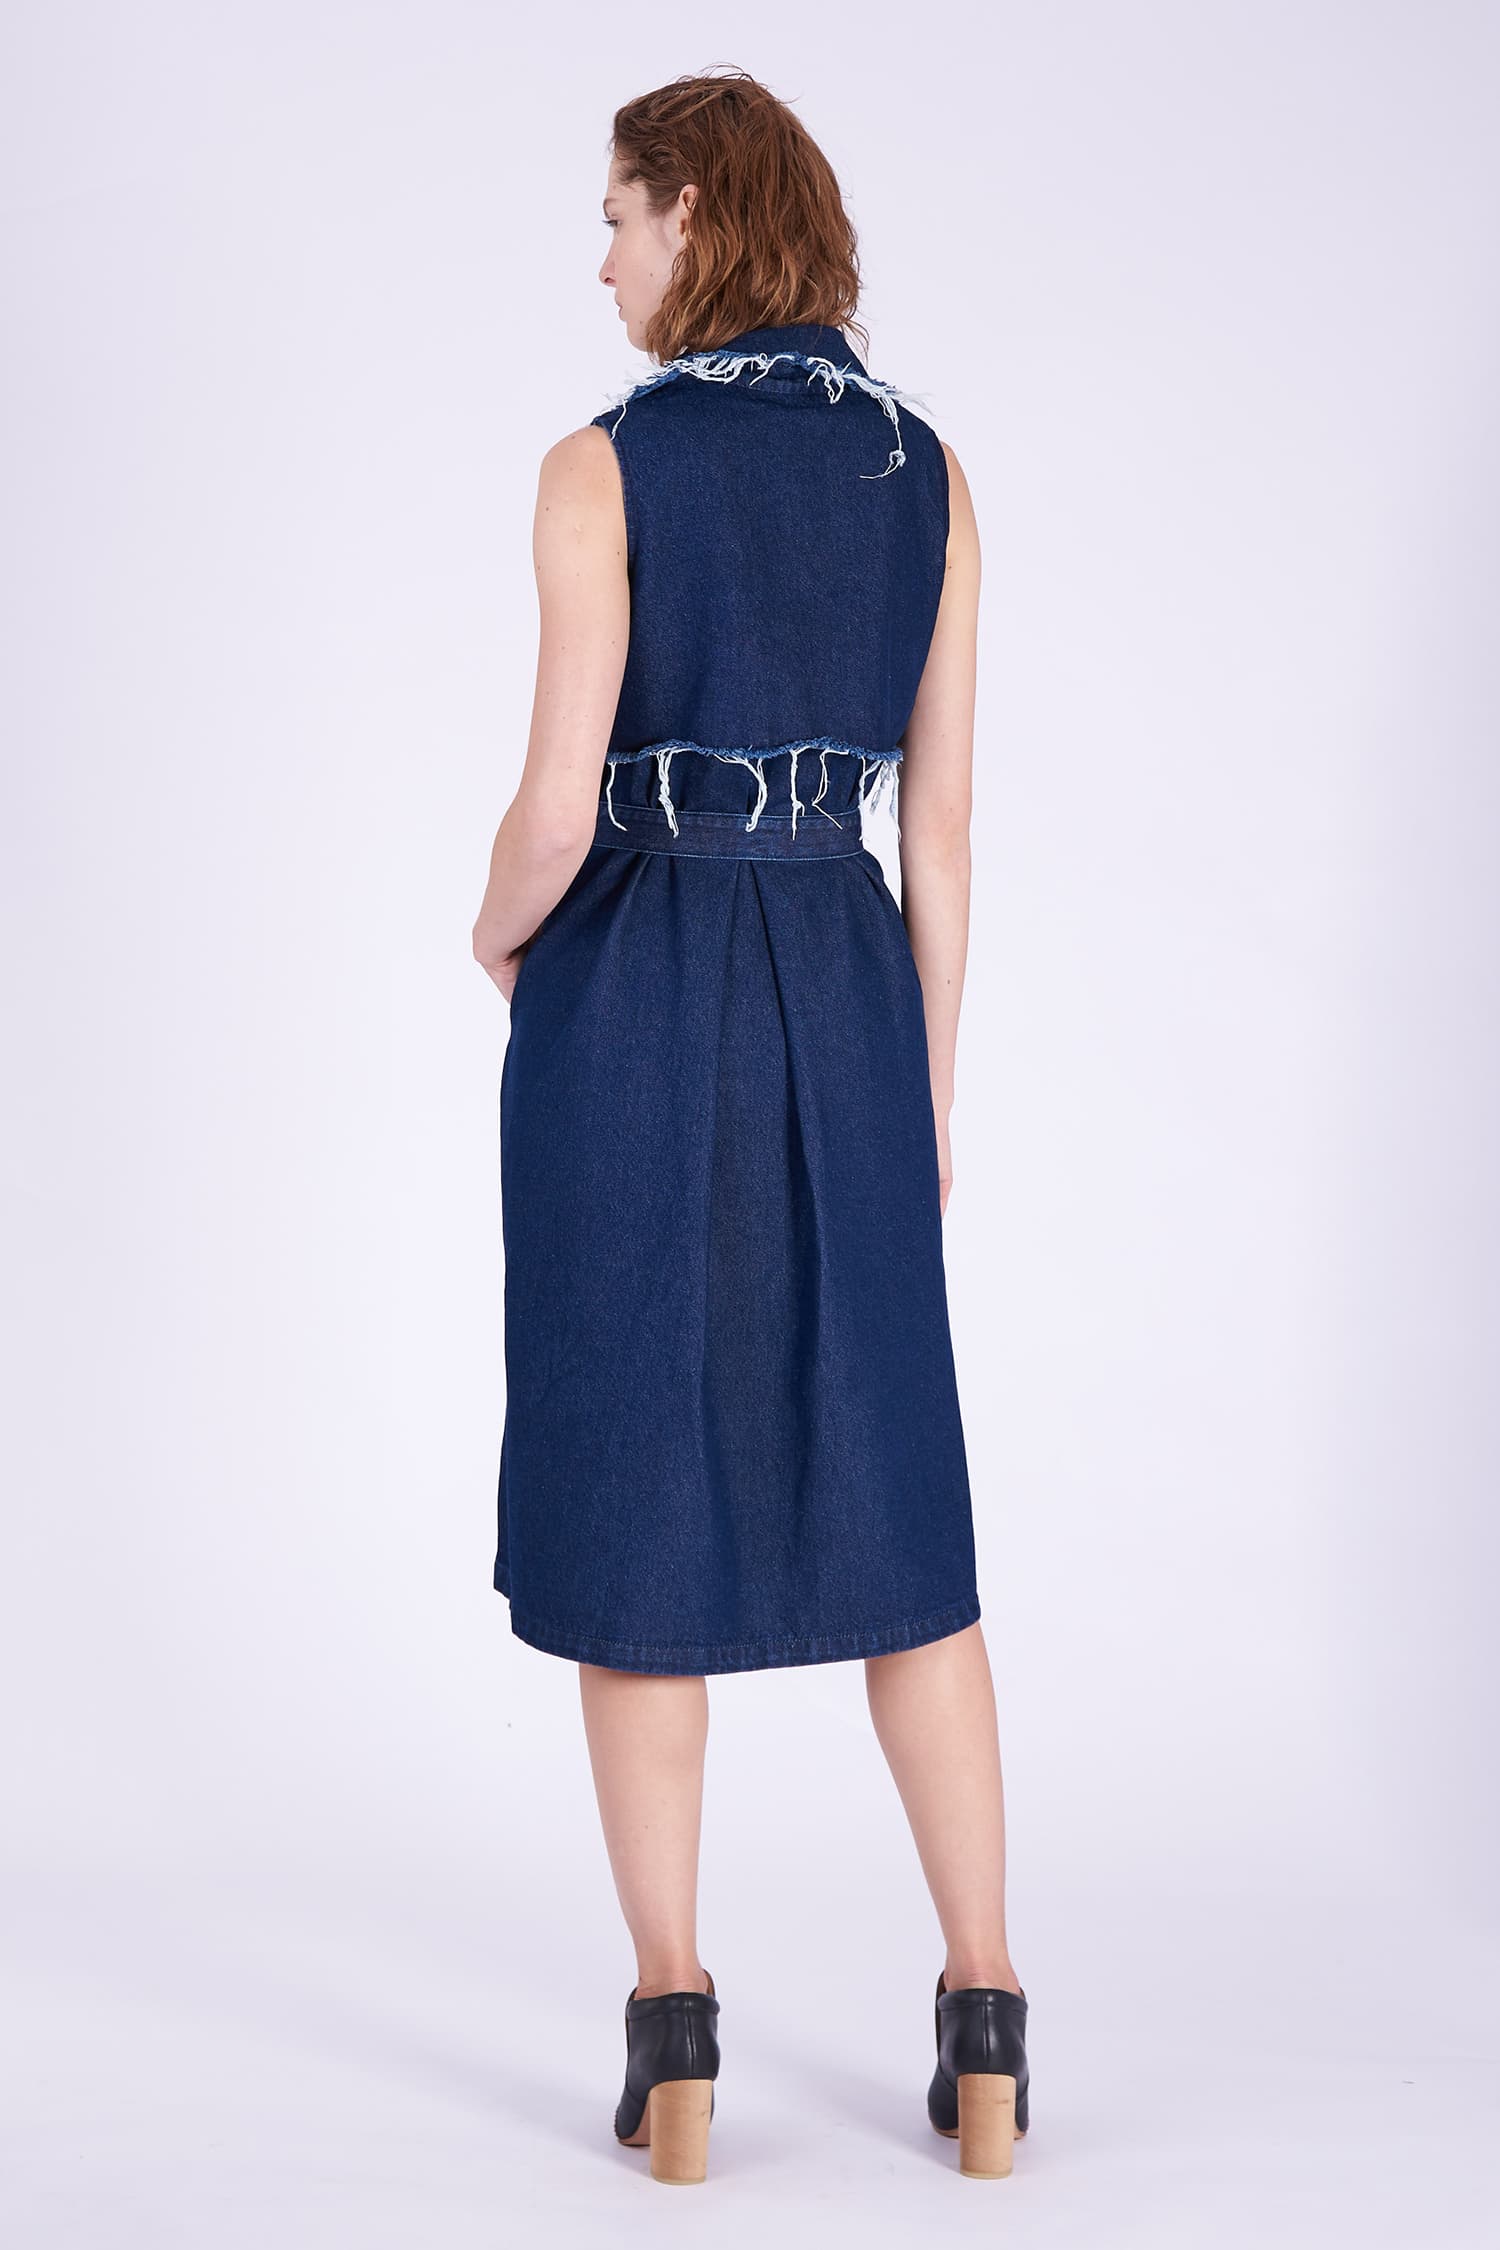 Acephala AW2018-19 Denim Dress Midi Blue // Sukienka Midi z Ciemnego Denimu